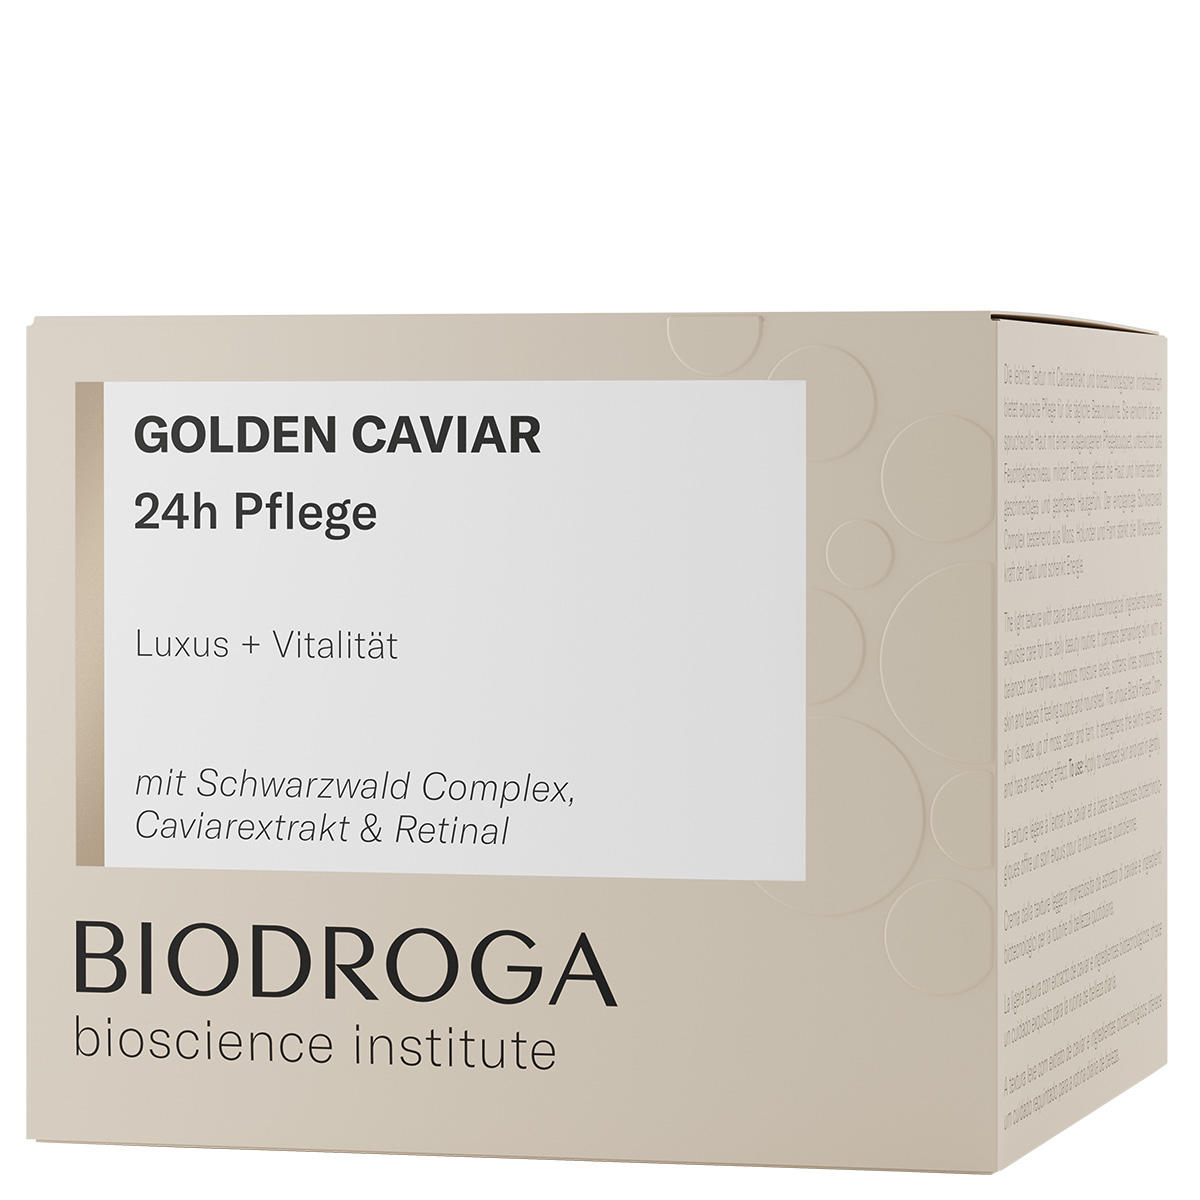 BIODROGA Bioscience Institute GOLDEN CAVIAR Assistenza 24 ore su 24 50 ml - 2